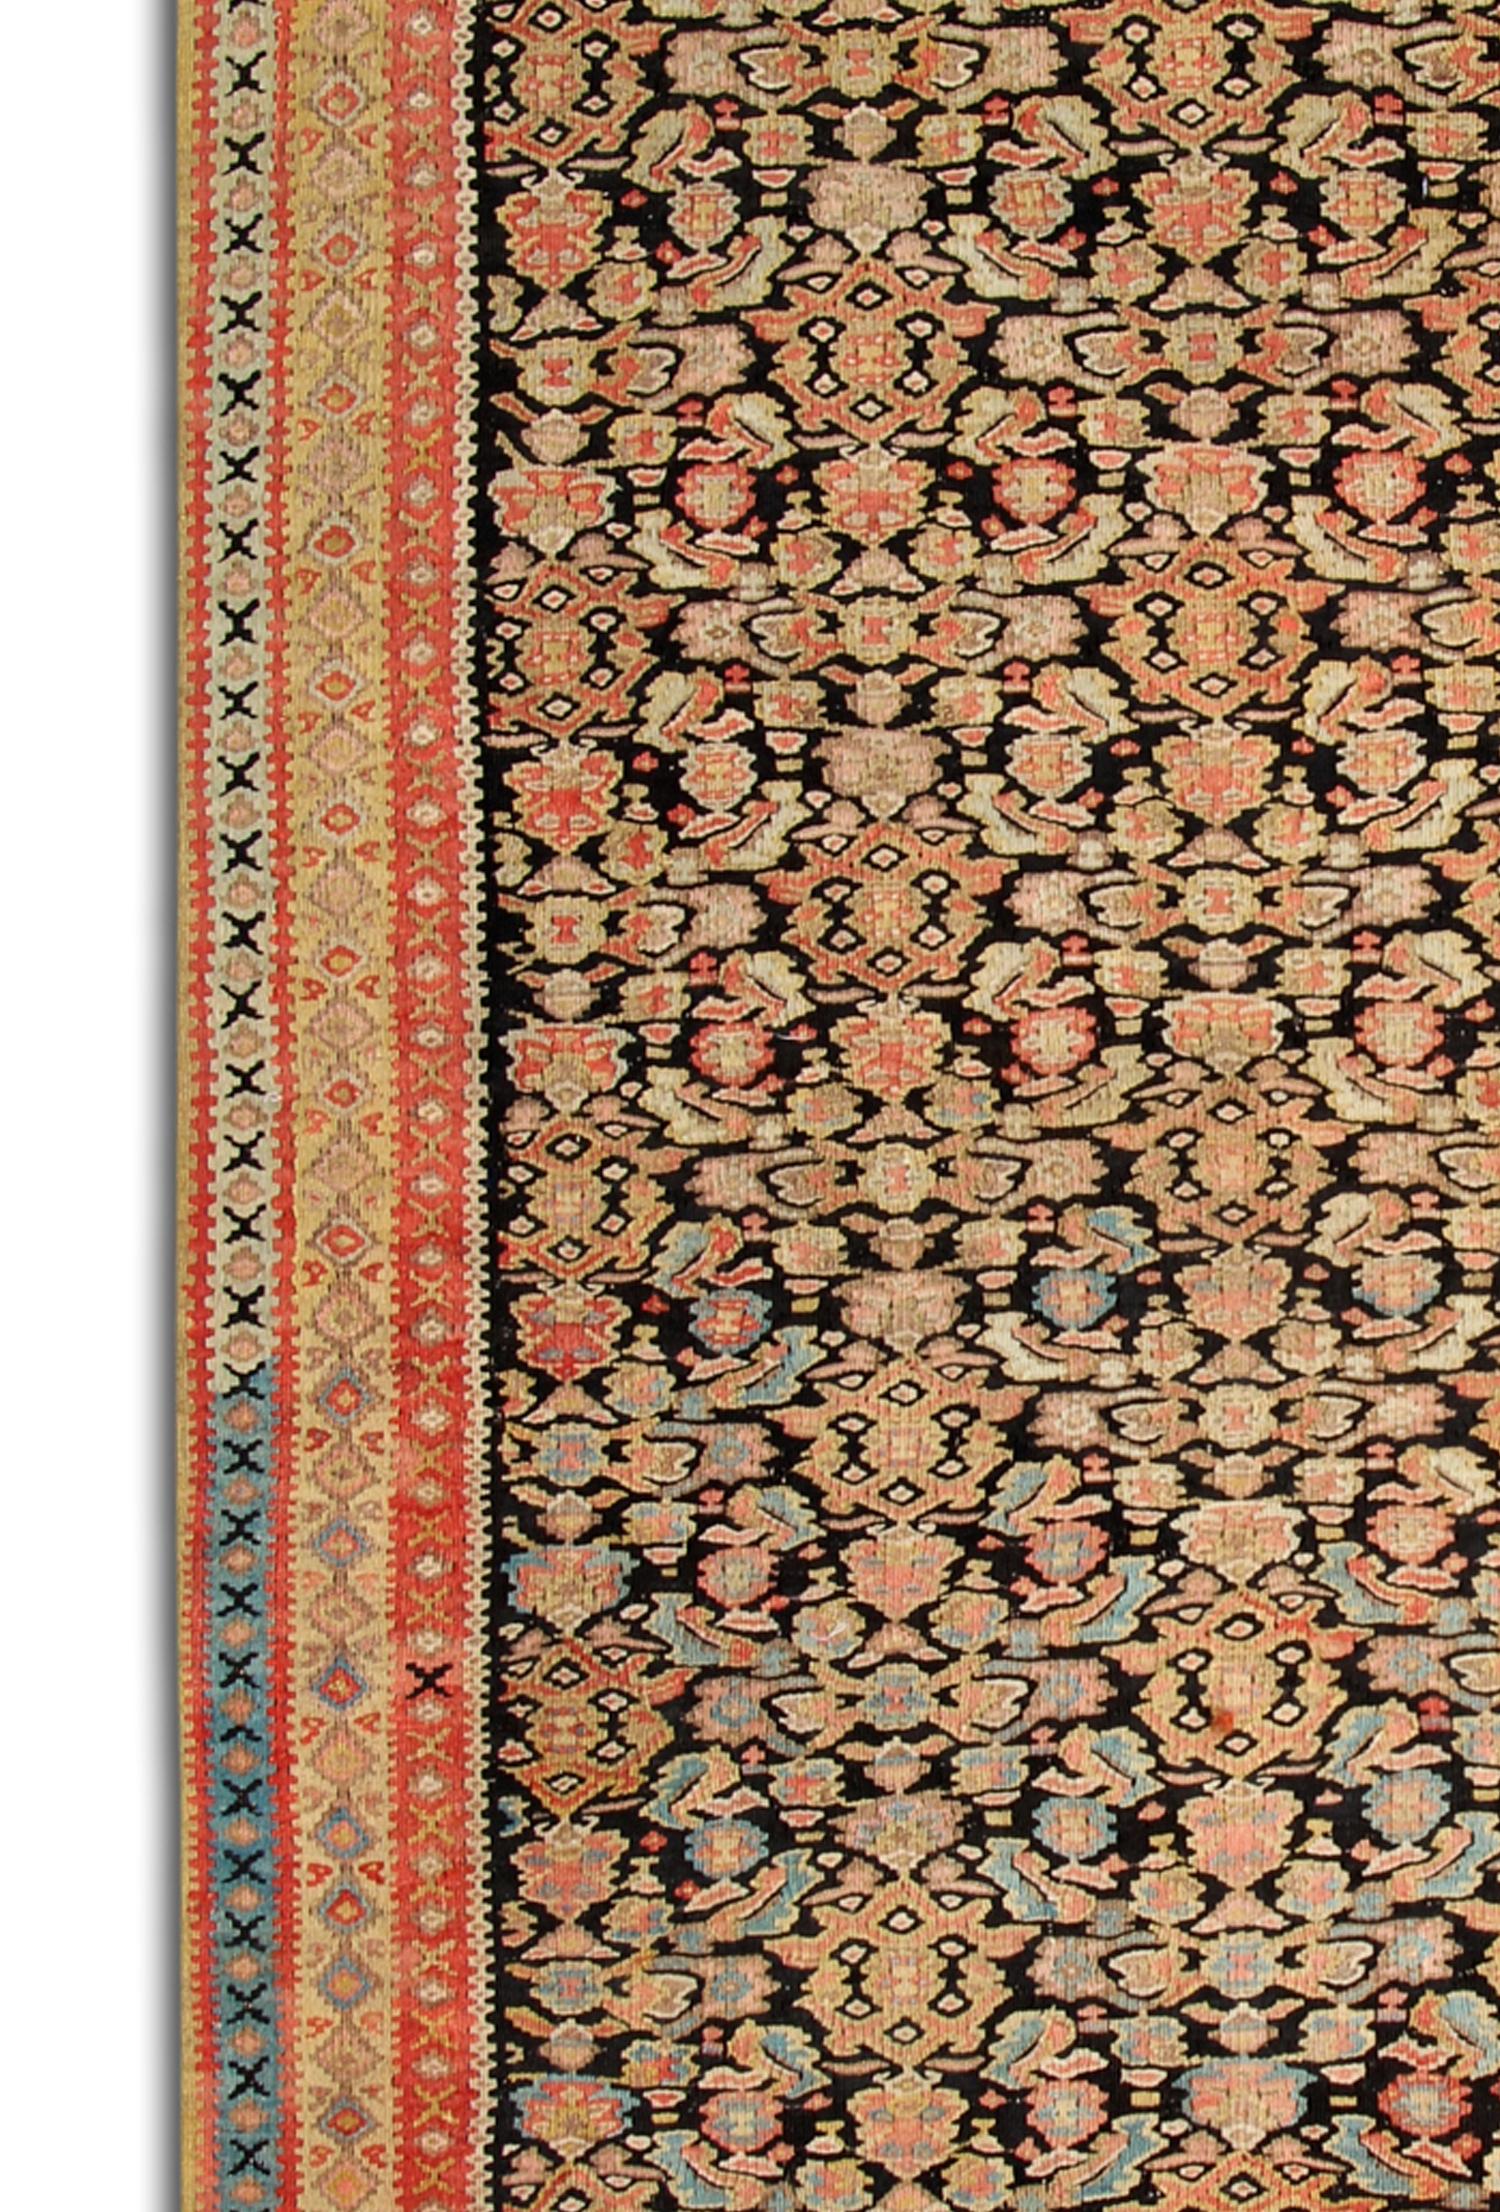 Ce tapis Kilim antique présente un magnifique motif floral sur toute sa surface, tissé de manière complexe avec de délicats détails floraux et géométriques. L'orange et le noir sont les principales couleurs utilisées, contrastant merveilleusement